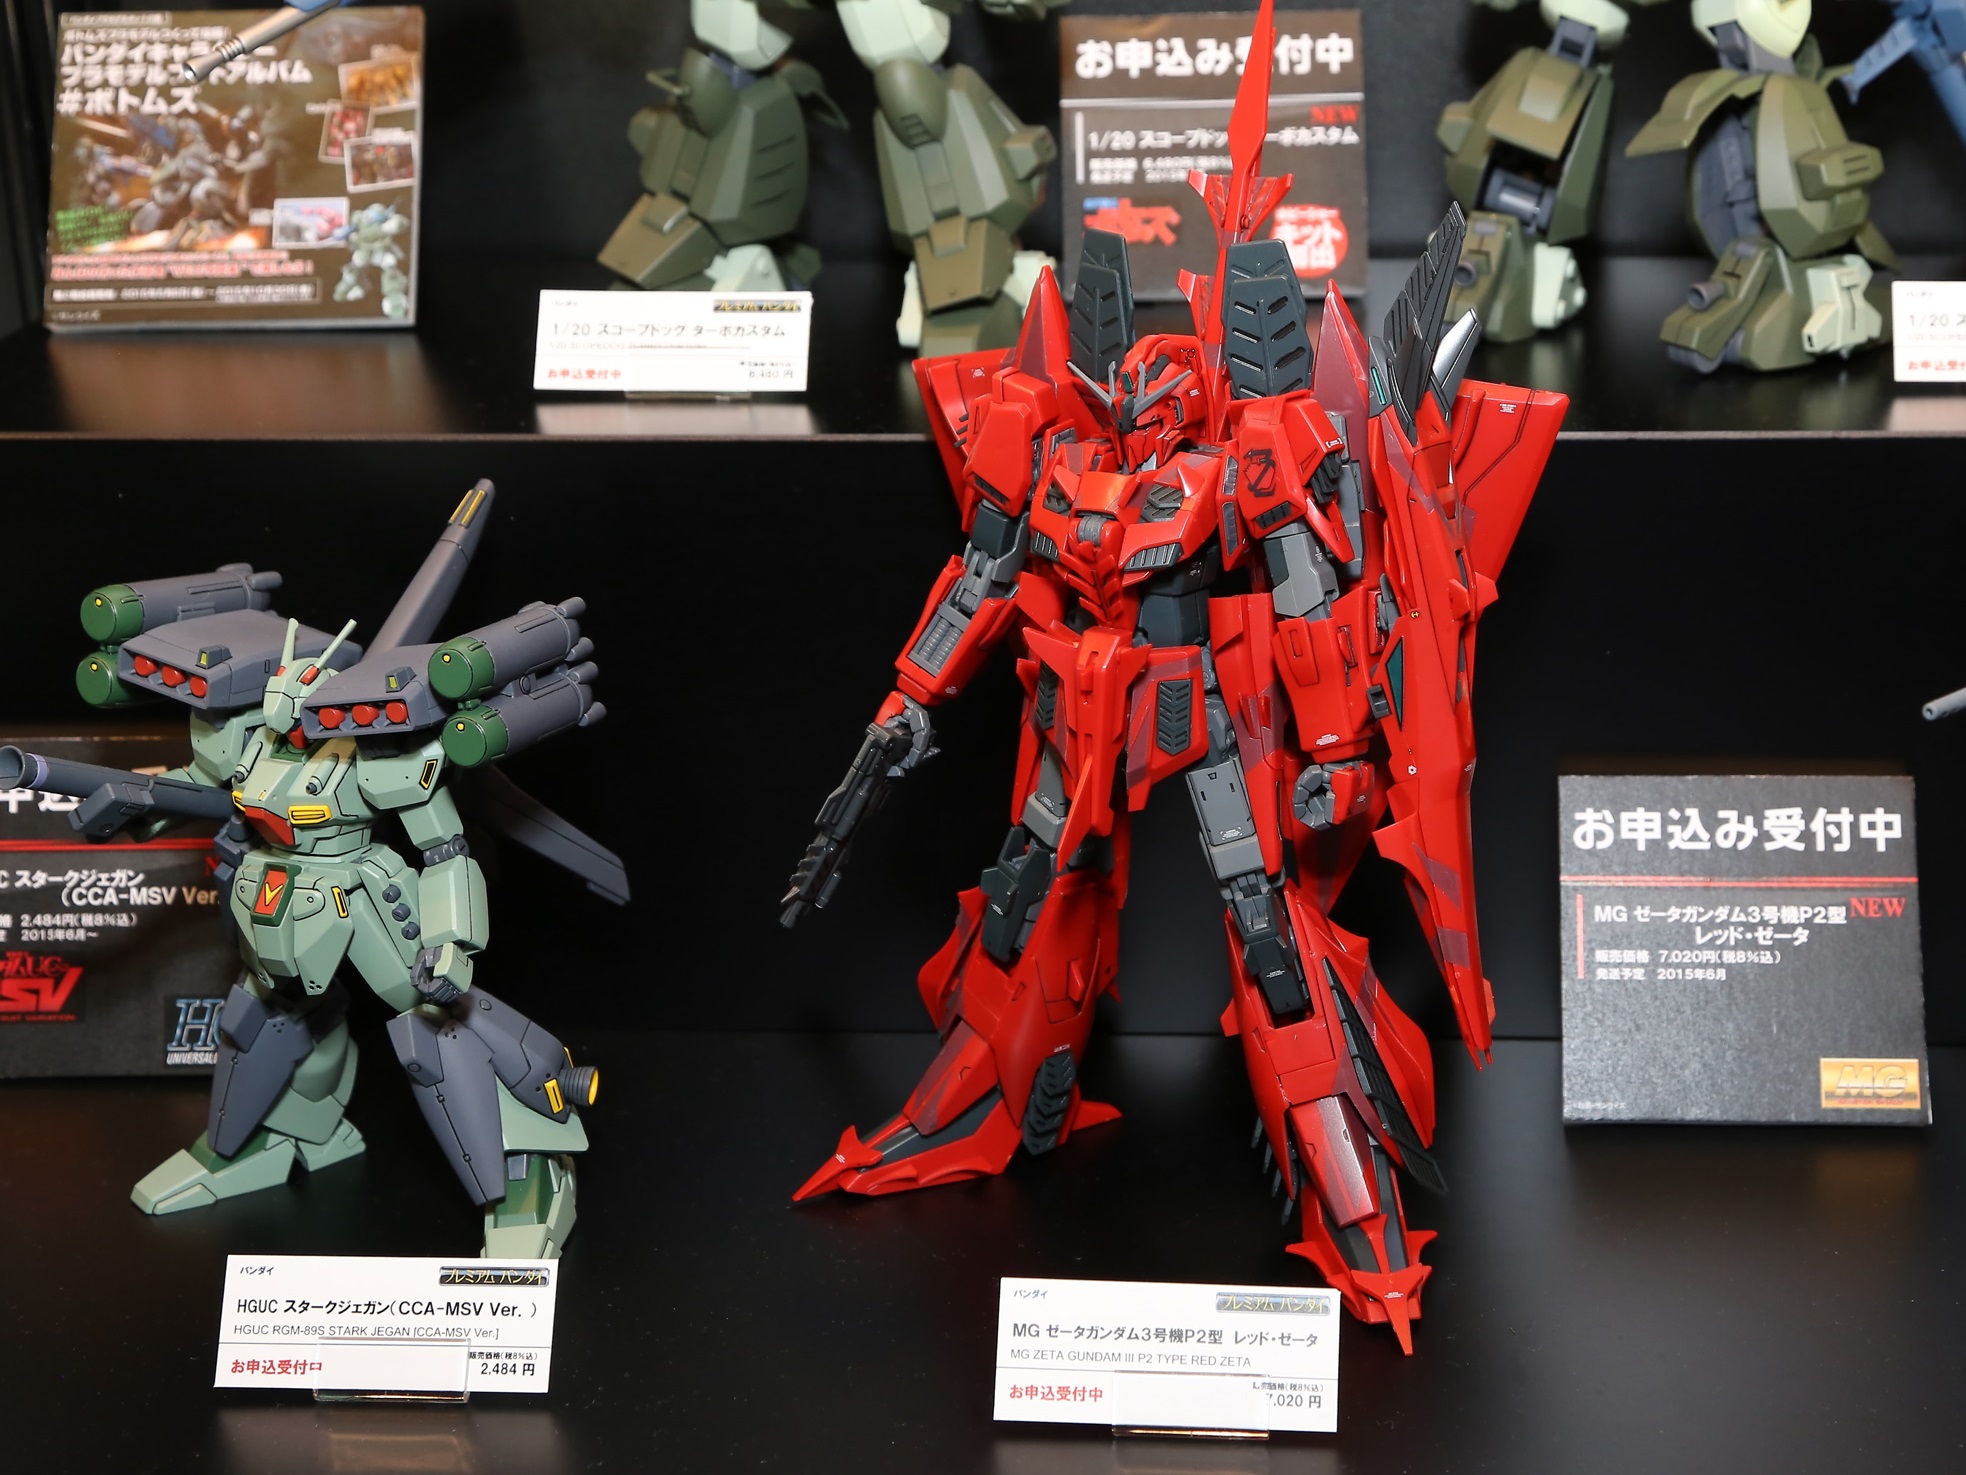 P-Bandai MG 1/100 MSZ-006P2/3C Z Gundam III Type [RED ZETA]: MANY 